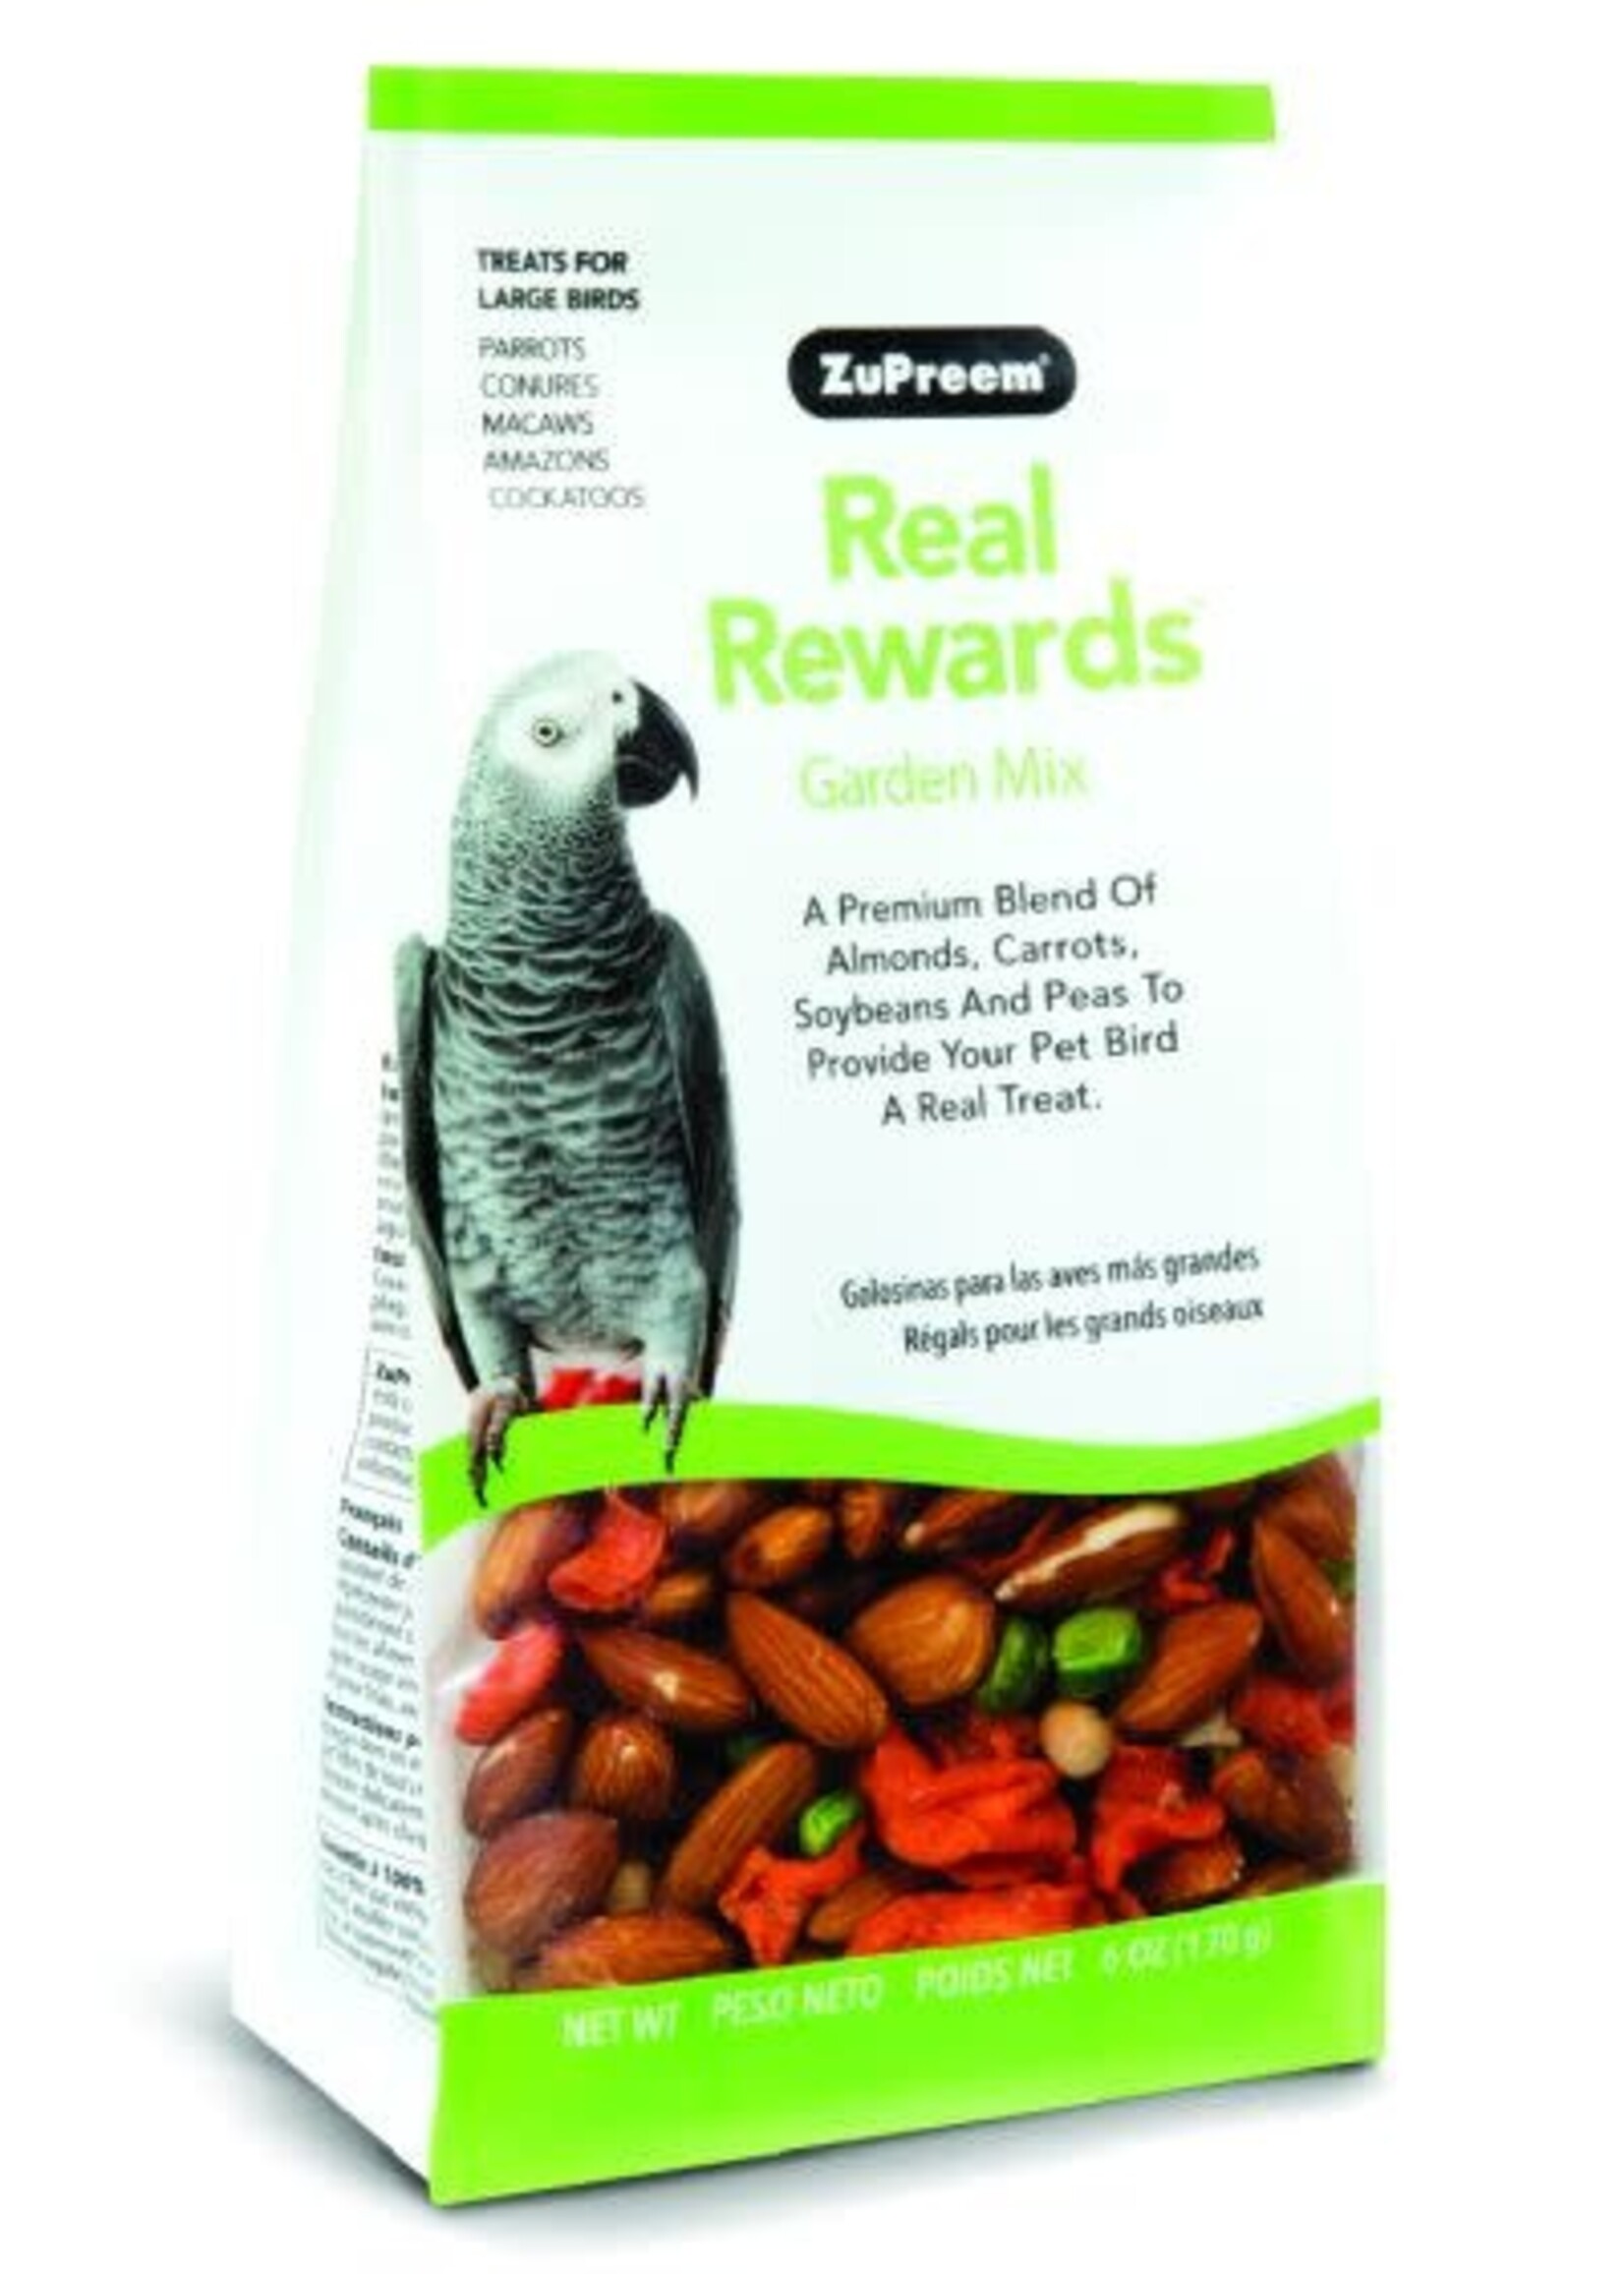 Zupreem ZuPreem "Real Rewards - Garden Mix" Vegetable & Nut Treats For Large Birds 6oz 49800